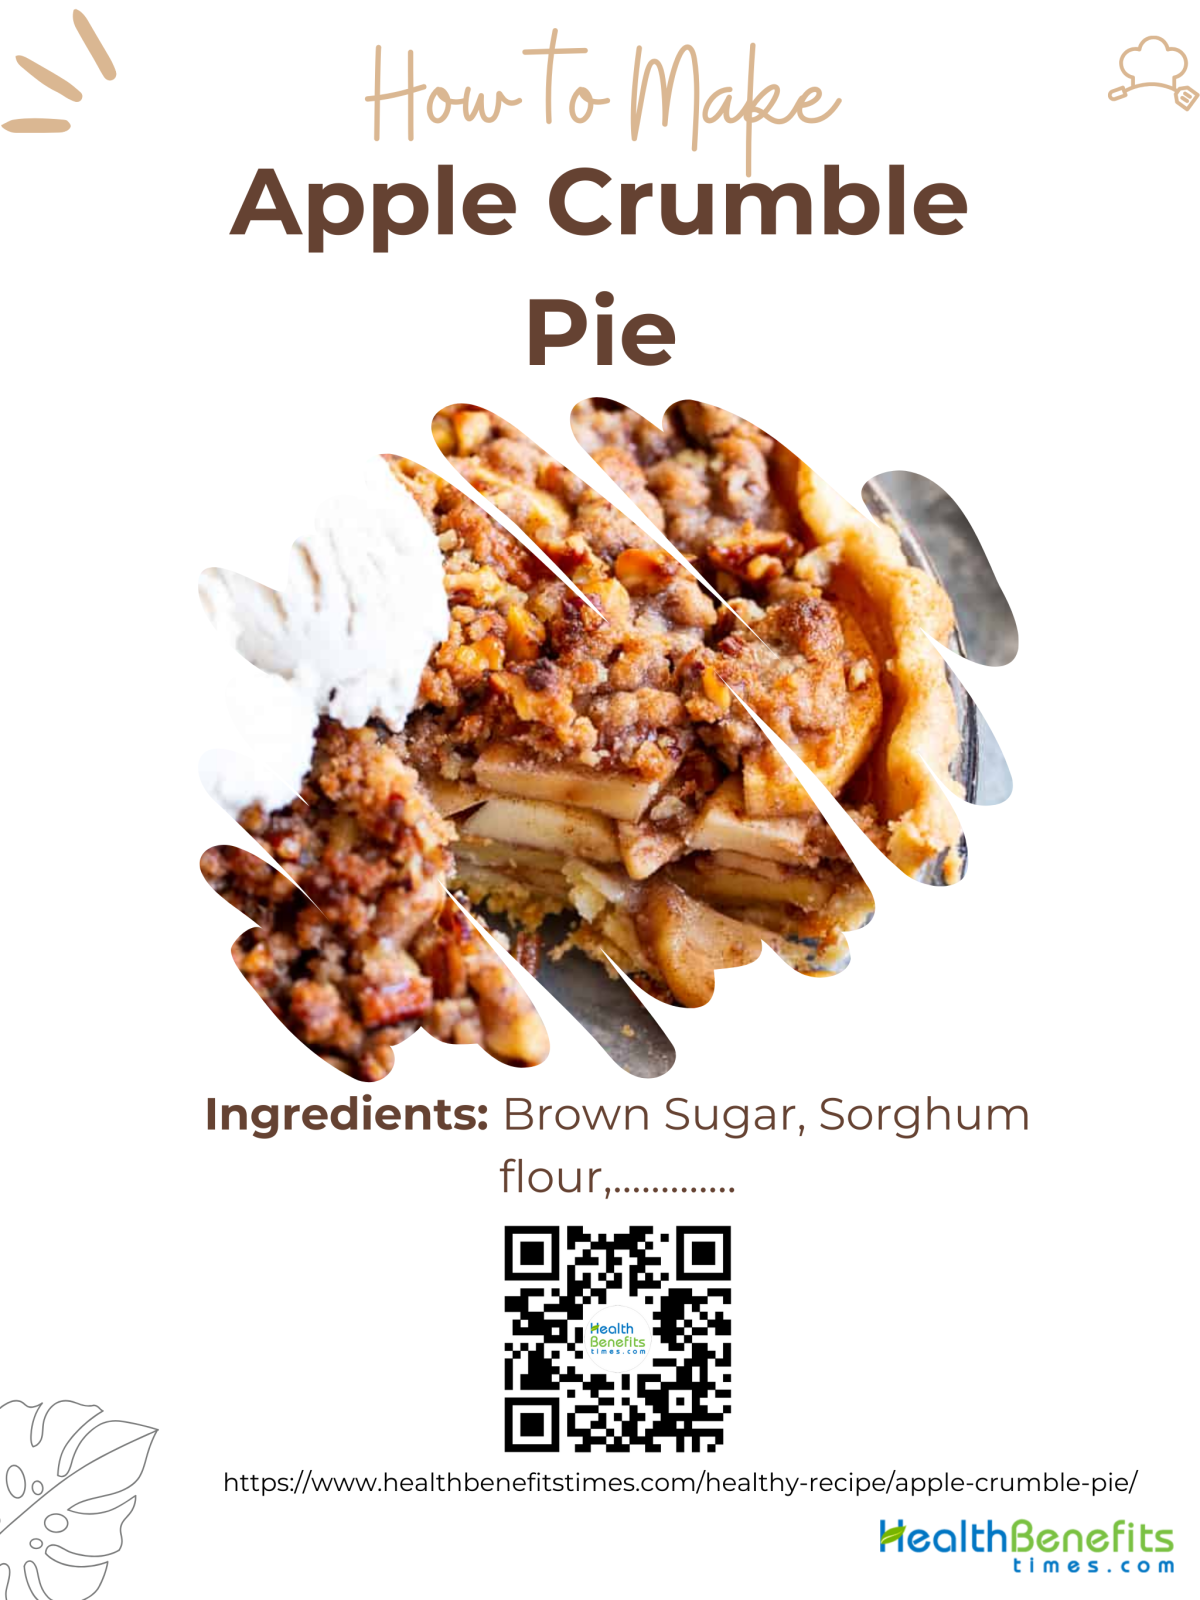 Apple Crumble Pie 1 1200x1600 